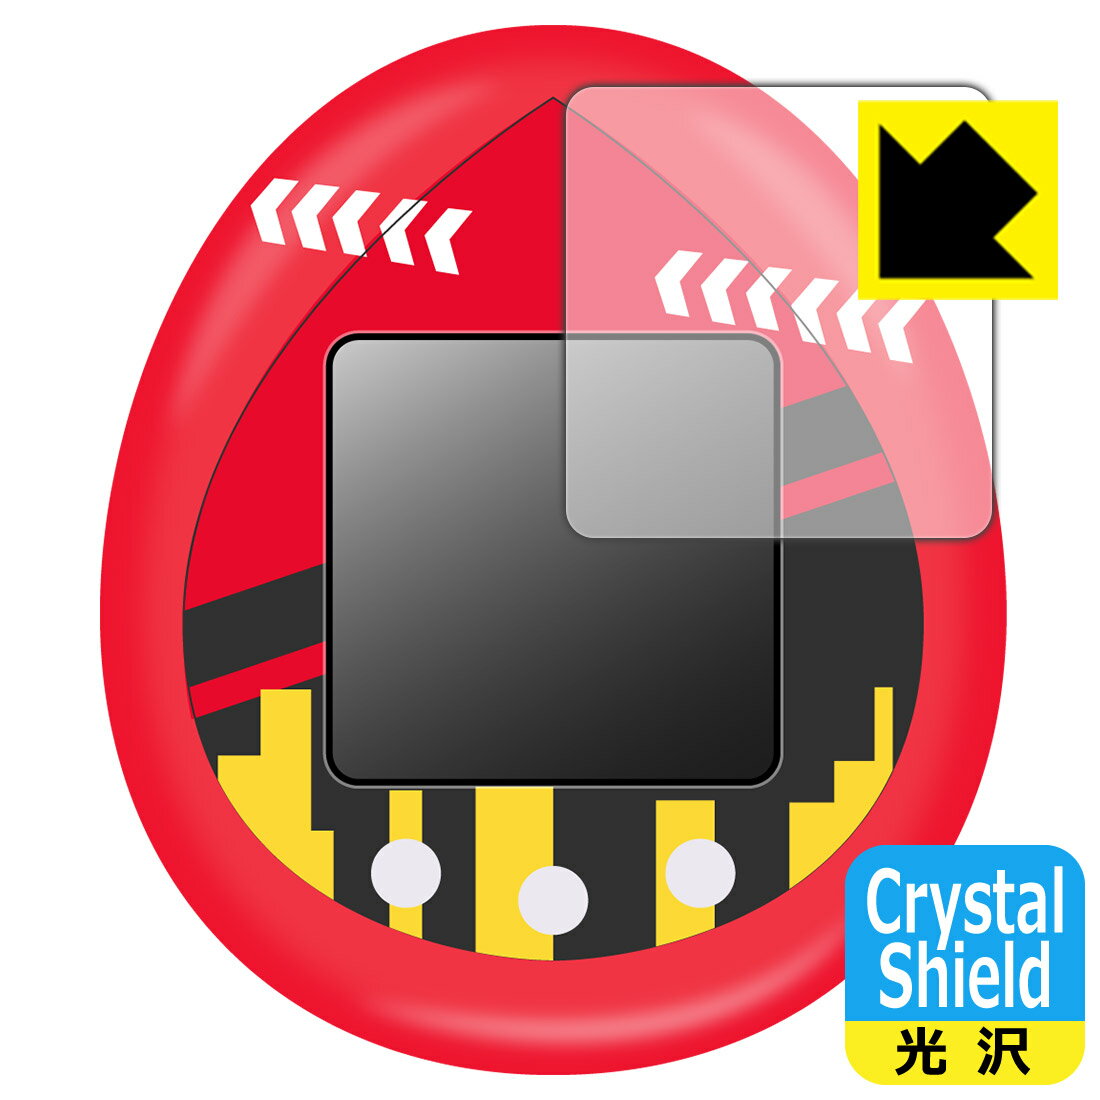 ●対応機種 : バンダイ TinyTAN Tamagotchi (タイニータン たまごっち) 用の保護フィルムです。●内容量 : 3枚●※このページに記載されている会社名や製品名、対応機種名などは各社の商標、または登録商標です。●「Crystal Shield」は高い透明度と光沢感で、保護フィルムを貼っていないかのようなクリア感のある『光沢タイプの保護フィルム』●安心の国産素材を使用。日本国内の自社工場で製造し出荷しています。【ポスト投函送料無料】商品は【ポスト投函発送 (追跡可能メール便)】で発送します。お急ぎ、配達日時を指定されたい方は以下のクーポンを同時購入ください。【お急ぎ便クーポン】　プラス110円(税込)で速達扱いでの発送。お届けはポストへの投函となります。【配達日時指定クーポン】　プラス550円(税込)で配達日時を指定し、宅配便で発送させていただきます。【お急ぎ便クーポン】はこちらをクリック【配達日時指定クーポン】はこちらをクリック 　 貼っていることを意識させないほどの高い透明度に、高級感あふれる光沢・クリアな仕上げとなります。 動画視聴や画像編集など、機器本来の発色を重視したい方におすすめです。 ハードコート加工がされており、キズや擦れに強くなっています。簡単にキズがつかず長くご利用いただけます。 表面はフッ素コーティングがされており、皮脂や汚れがつきにくく、また、落ちやすくなっています。 指滑りもなめらかで、快適な使用感です。 油性マジックのインクもはじきますので簡単に拭き取れます。 接着面は気泡の入りにくい特殊な自己吸着タイプです。素材に柔軟性があり、貼り付け作業も簡単にできます。また、はがすときにガラス製フィルムのように割れてしまうことはありません。 貼り直しが何度でもできるので、正しい位置へ貼り付けられるまでやり直すことができます。 抗菌加工によりフィルム表面の菌の繁殖を抑えることができます。清潔な画面を保ちたい方におすすめです。 ※抗菌率99.9％ / JIS Z2801 抗菌性試験方法による評価 最高級グレードの国産素材を日本国内の弊社工場で加工している完全な Made in Japan です。安心の品質をお届けします。 使用上の注意 ●本製品は機器の画面をキズなどから保護するフィルムです。他の目的にはご使用にならないでください。 ●本製品は液晶保護および機器本体を完全に保護することを保証するものではありません。機器の破損、損傷、故障、その他損害につきましては一切の責任を負いかねます。 ●製品の性質上、画面操作の反応が変化したり、表示等が変化して見える場合がございます。 ●貼り付け作業時の失敗(位置ズレ、汚れ、ゆがみ、折れ、気泡など)および取り外し作業時の破損、損傷などについては、一切の責任を負いかねます。 ●水に濡れた状態でのご使用は吸着力の低下などにより、保護フィルムがはがれてしまう場合がございます。防水対応の機器でご使用の場合はご注意ください。 ●アルコール類やその他薬剤を本製品に付着させないでください。表面のコーティングや吸着面が変質するおそれがあります。 ●品質向上のため、仕様などを予告なく変更する場合がございますので、予めご了承ください。